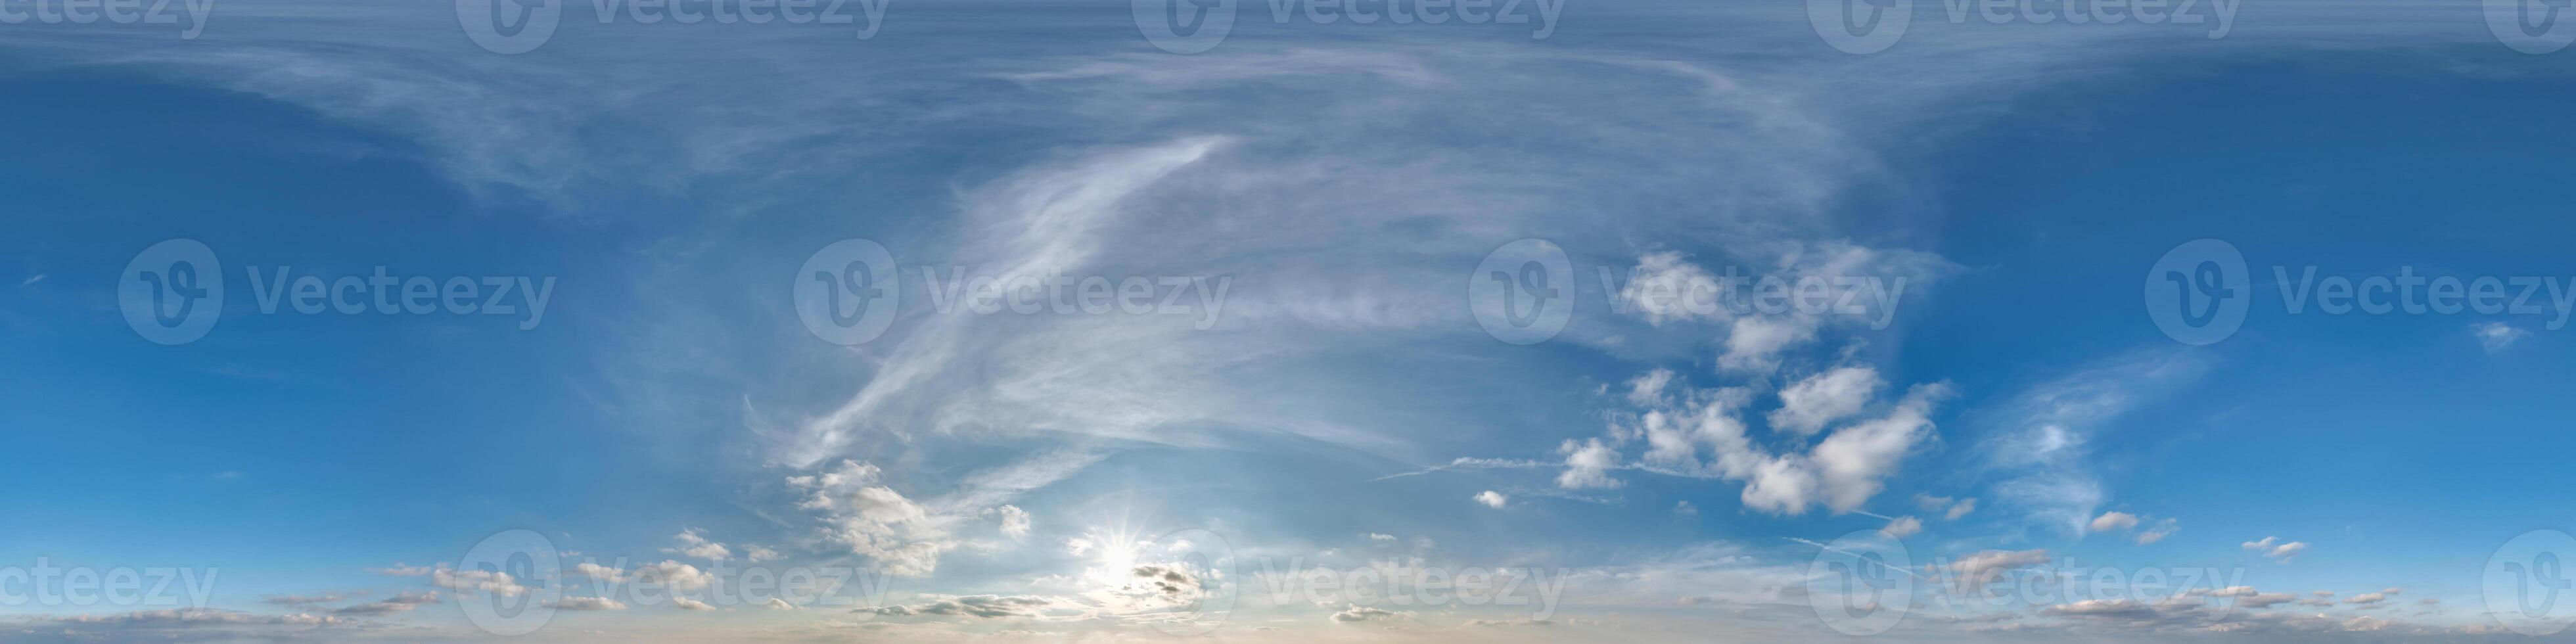 blå skydome 360 hdri panorama med skymning moln innan solnedgång i likriktad formatera med zenit för använda sig av i 3d grafik som himmel ersättning eller redigera Drönare skott foto